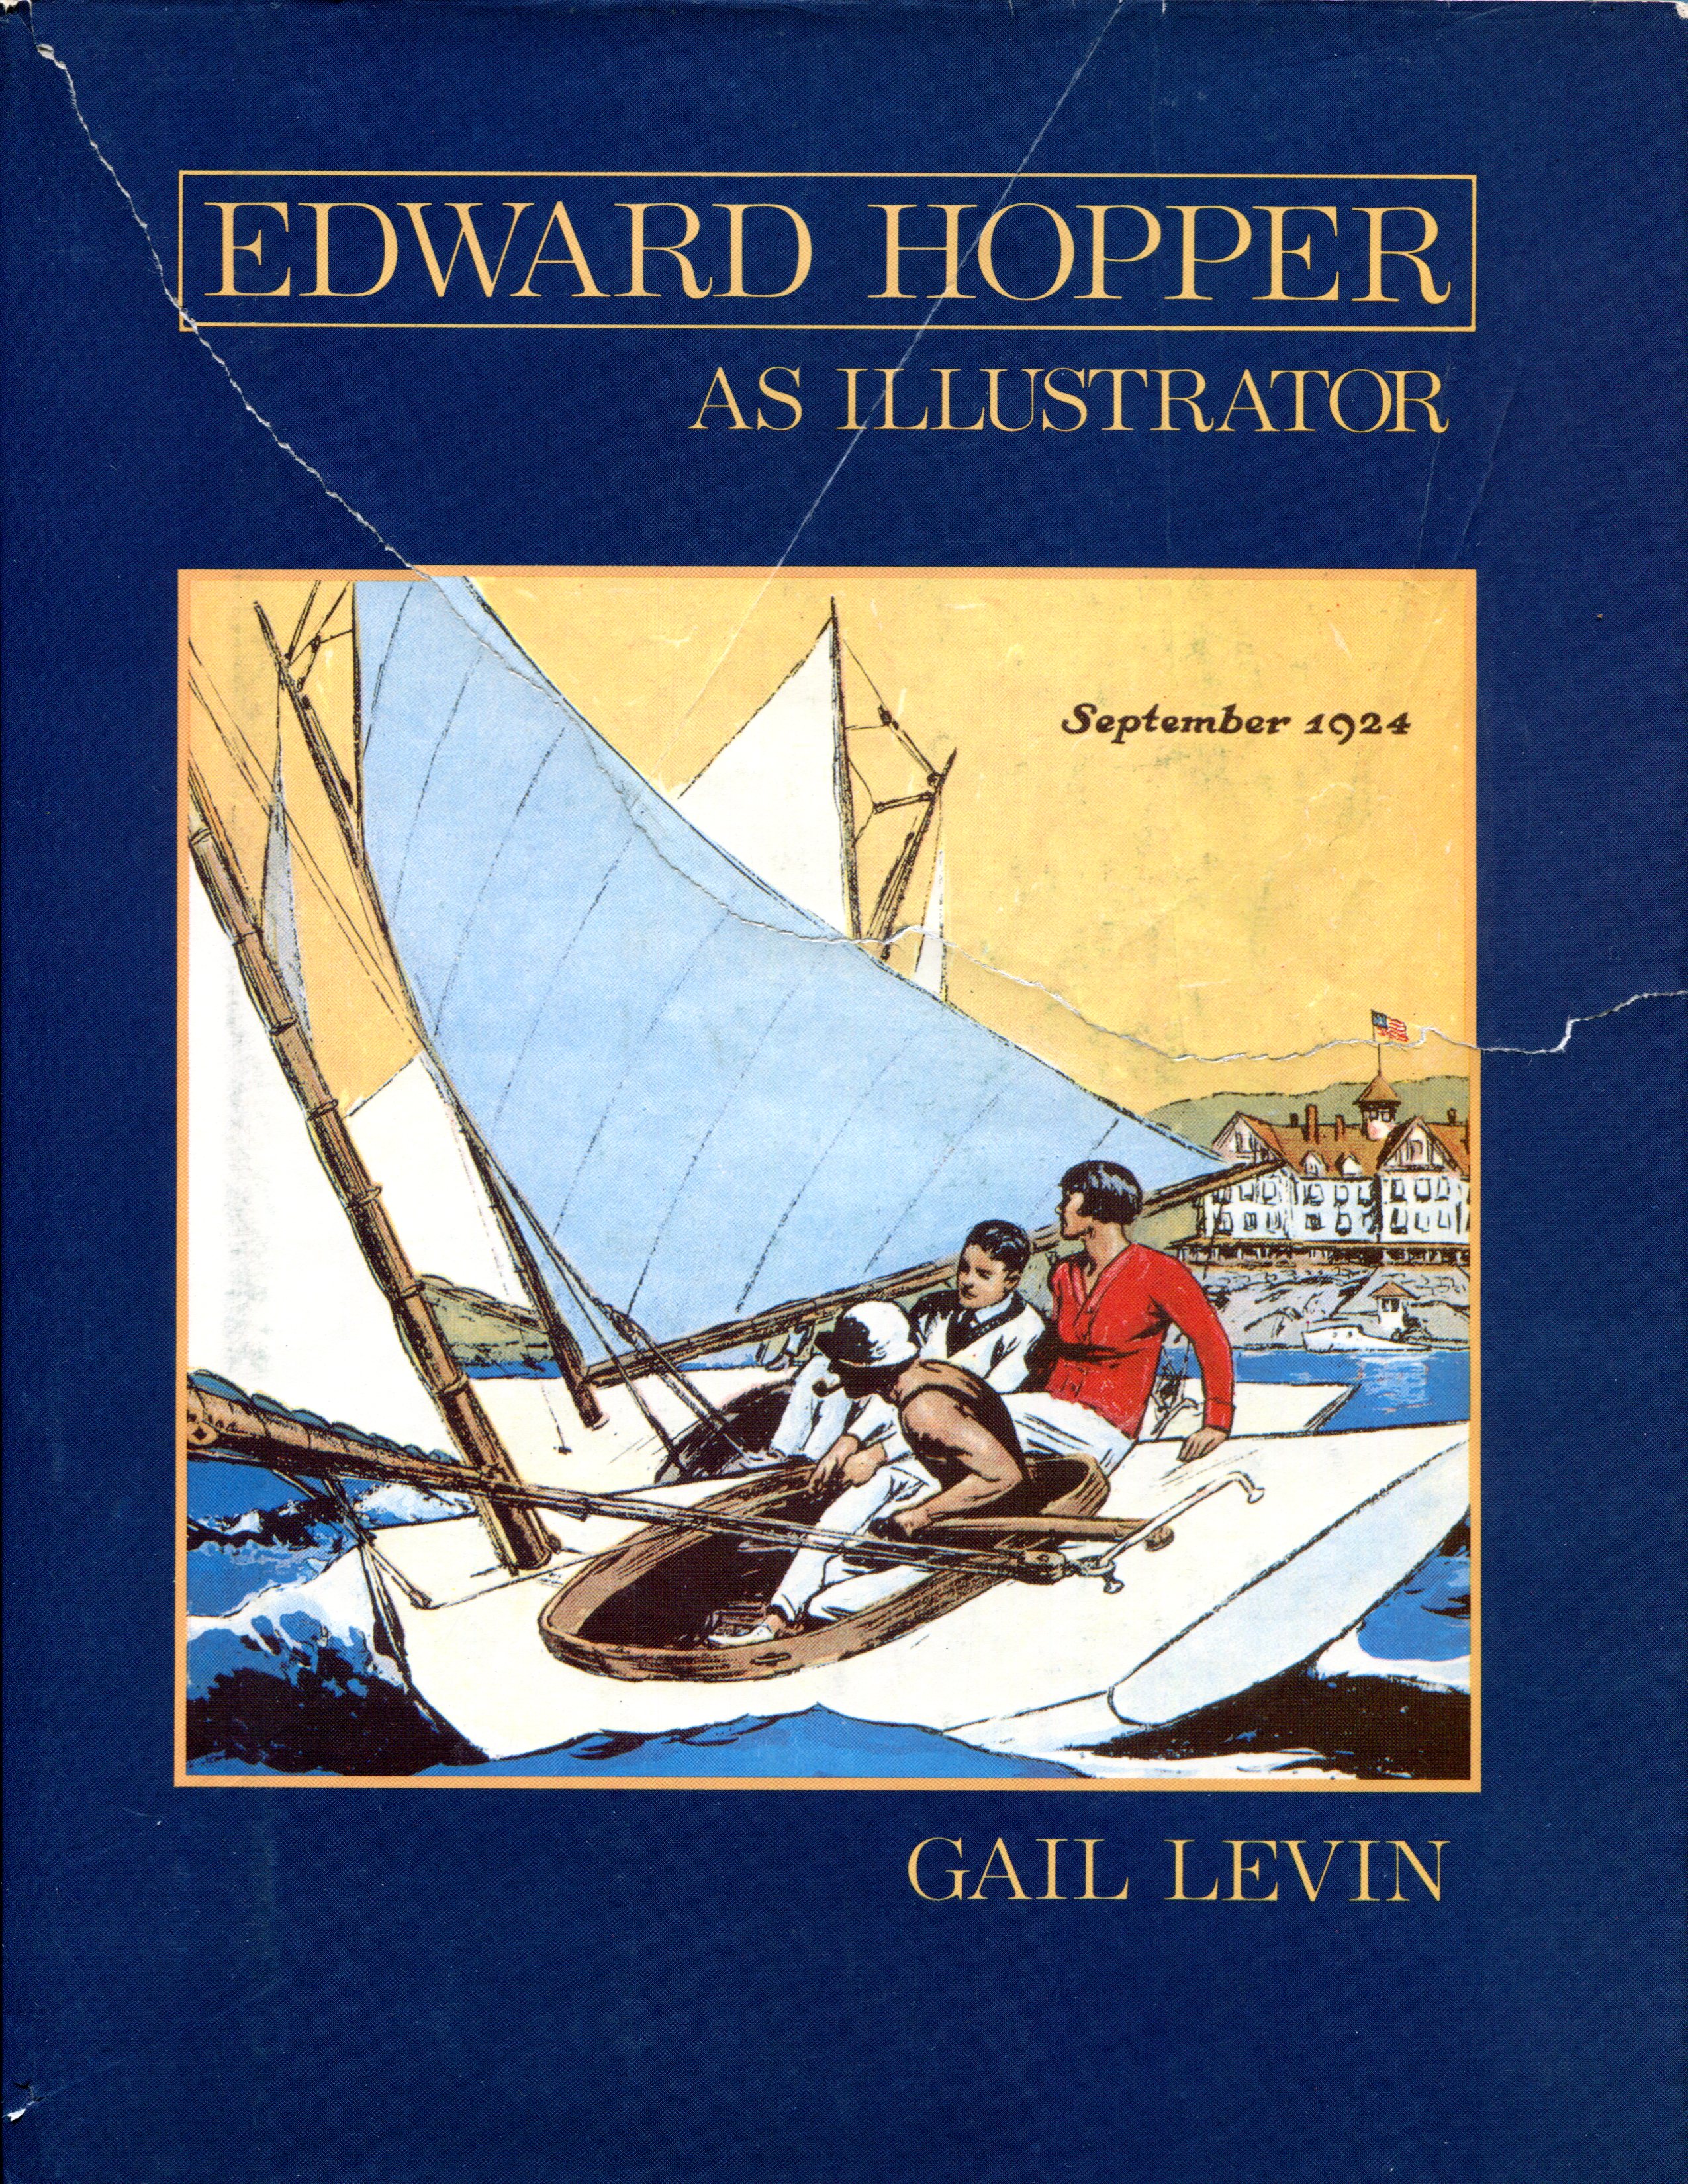 Edward Hopper as illustrator